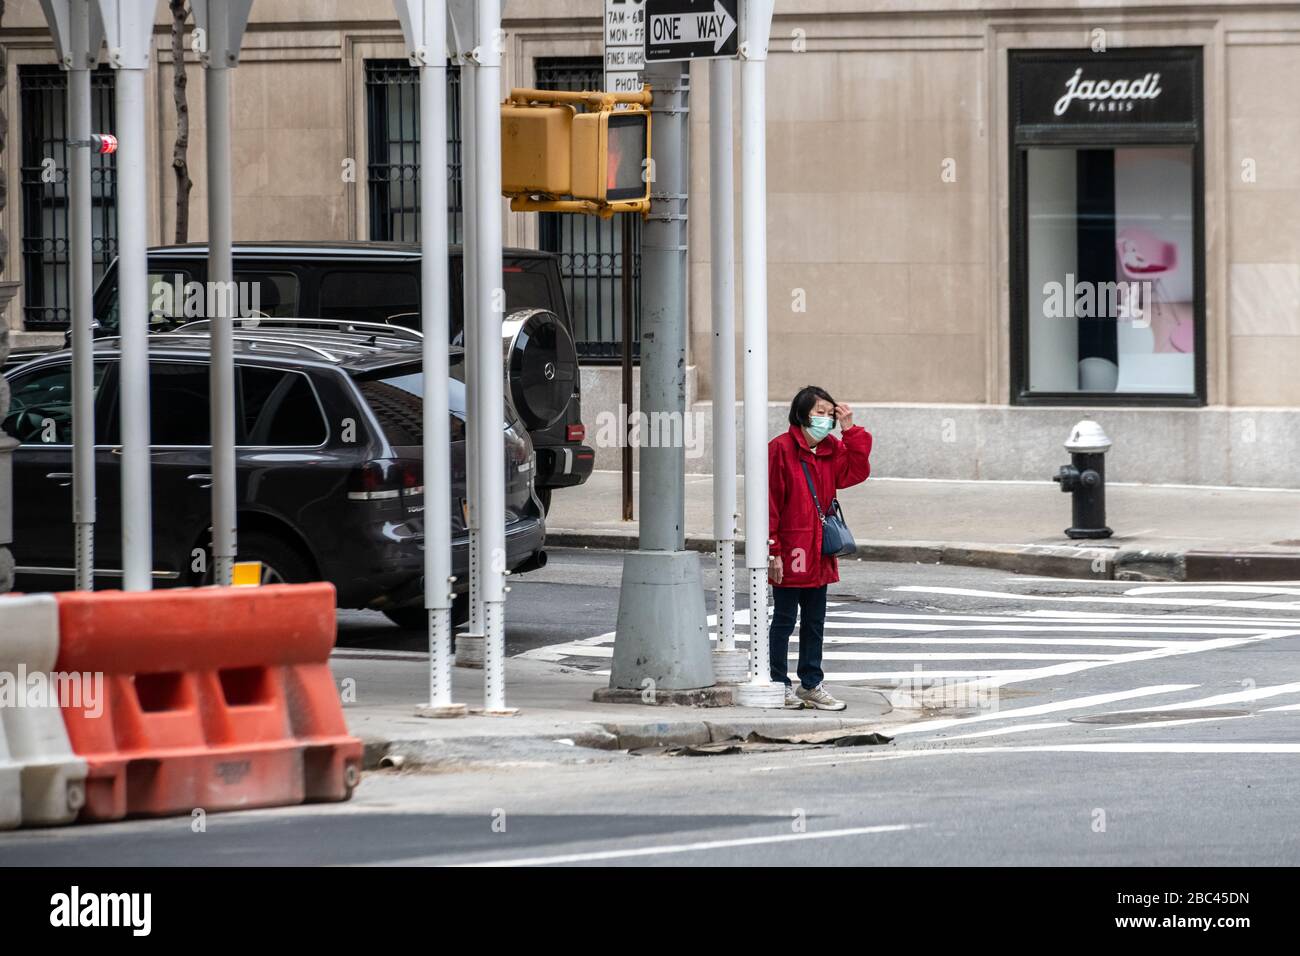 New York, USA. April 2020. Eine Frau trägt eine Gesichtsmaske, als sie in New York City spaziert. Heute sagte die Regierung, dass Newyorkers ihre Gesichter bedecken sollten, wenn sie nach draußen gehen, um eine Ausbreitung des Coronavirus zu verhindern. Kredit: Enrique Shore/Alamy Live News Stockfoto